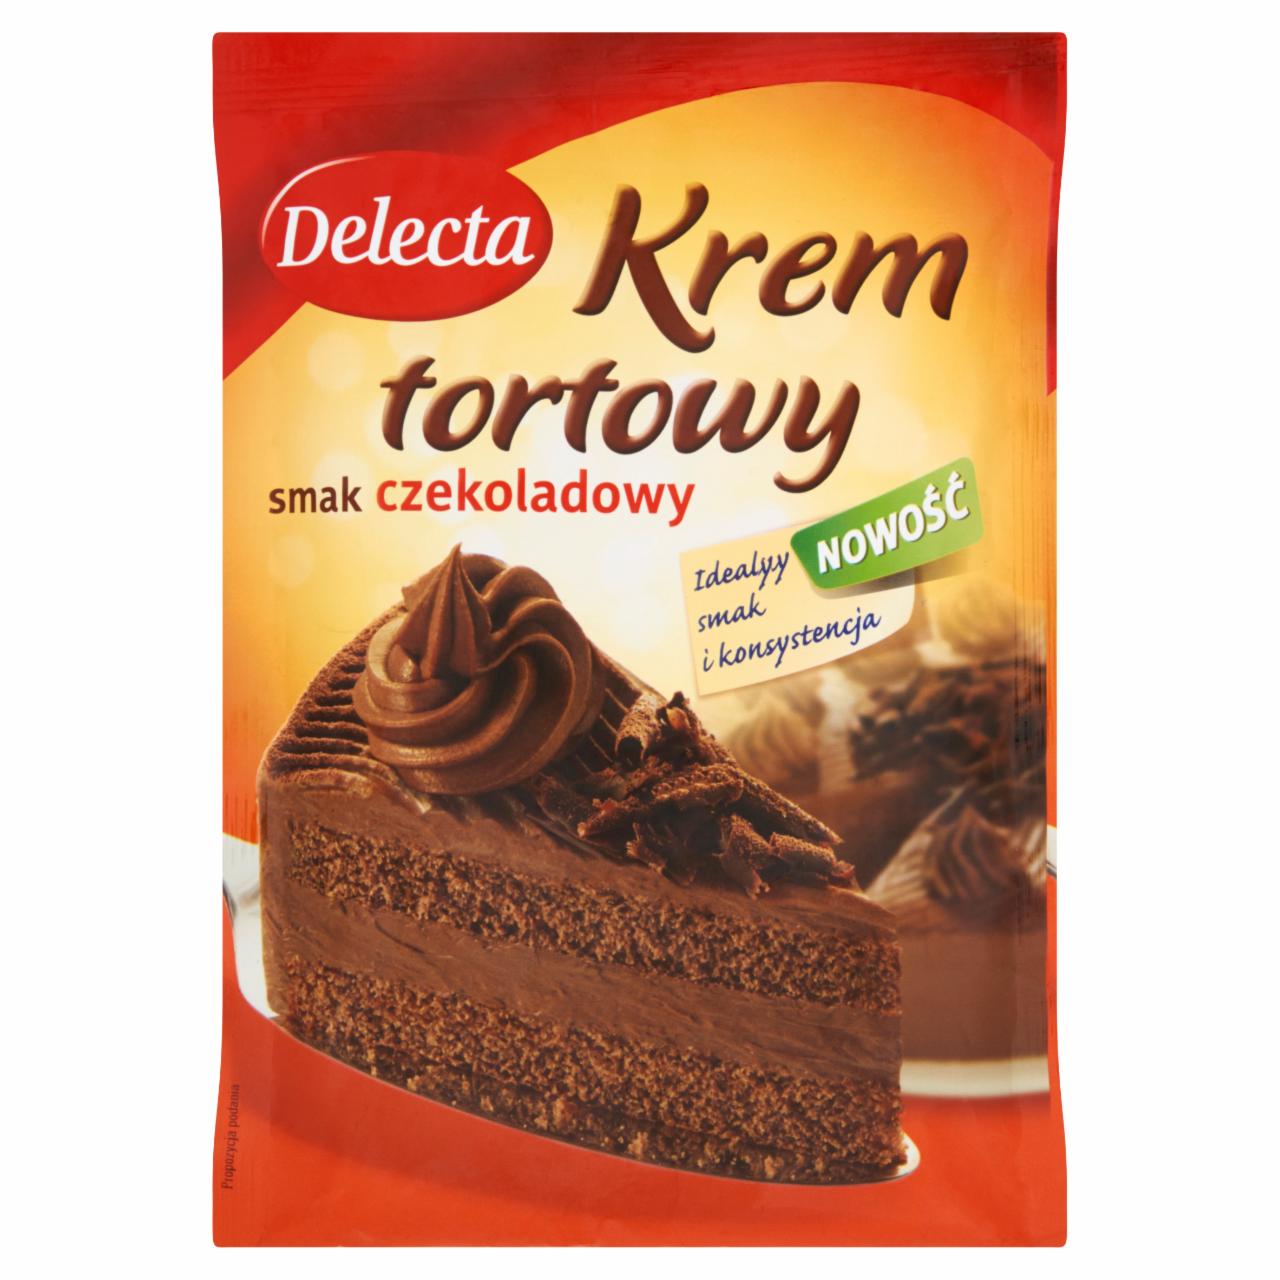 Zdjęcia - Delecta Krem tortowy smak czekoladowy 115 g